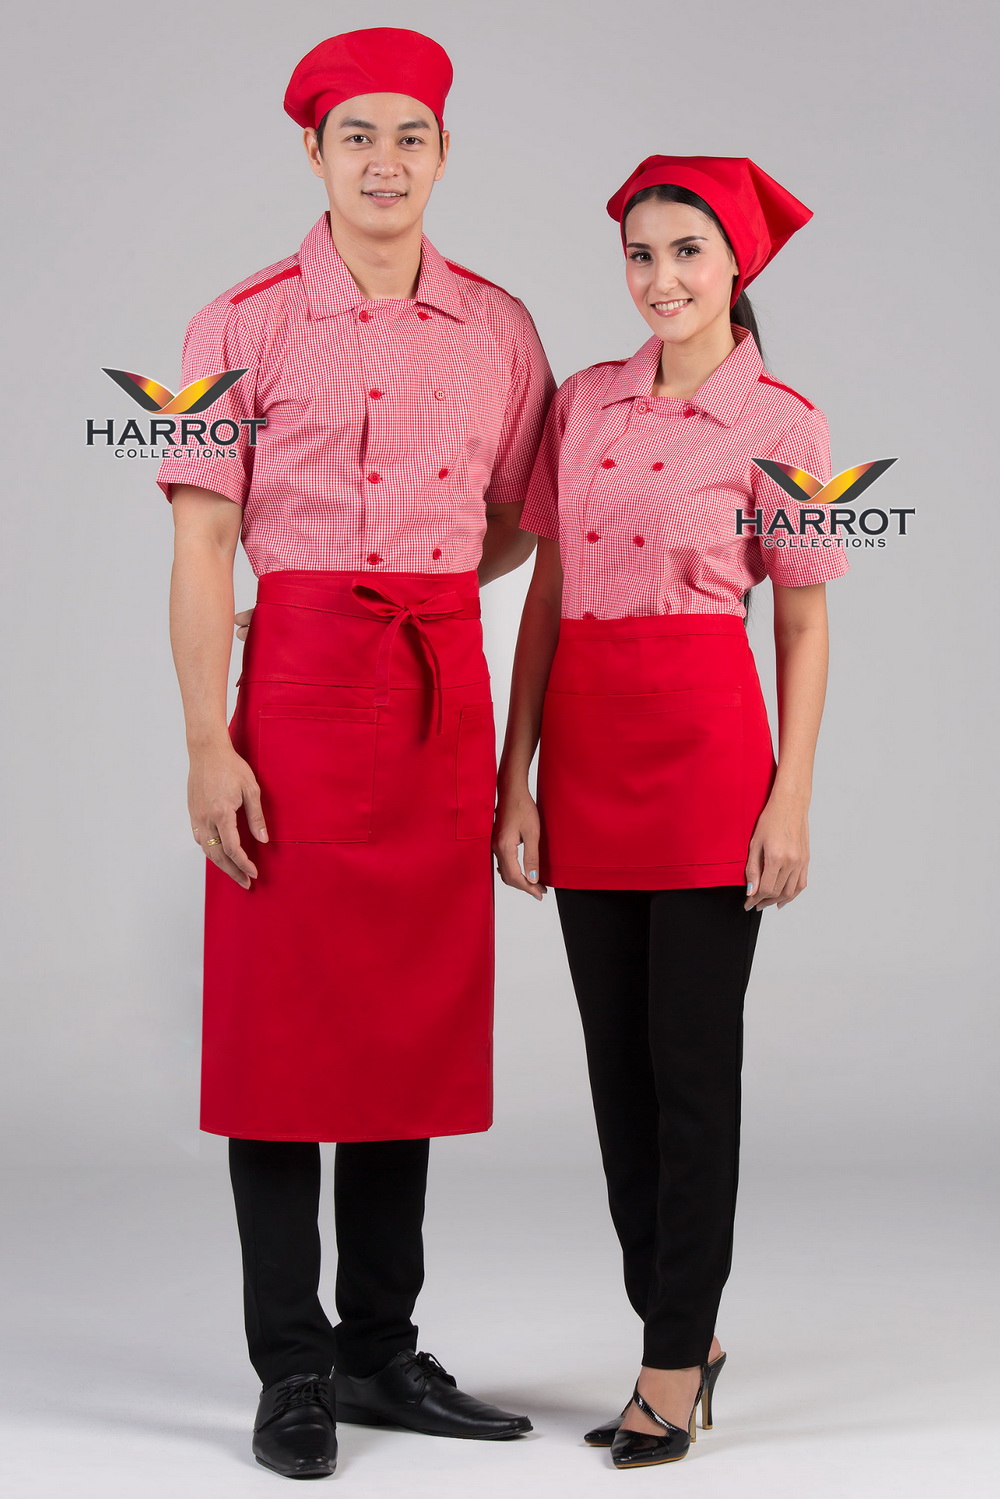 เสื้อพนักงานเสิร์ฟ เสื้อเสิร์ฟ เสื้อเชิ้ต เสื้อฟอร์ม เสื้อพนักงานต้อนรับ ชุดพนักงานเสิร์ฟ กระดุม 2 แถว ลายสก๊อตสีแดง (SHI2102)